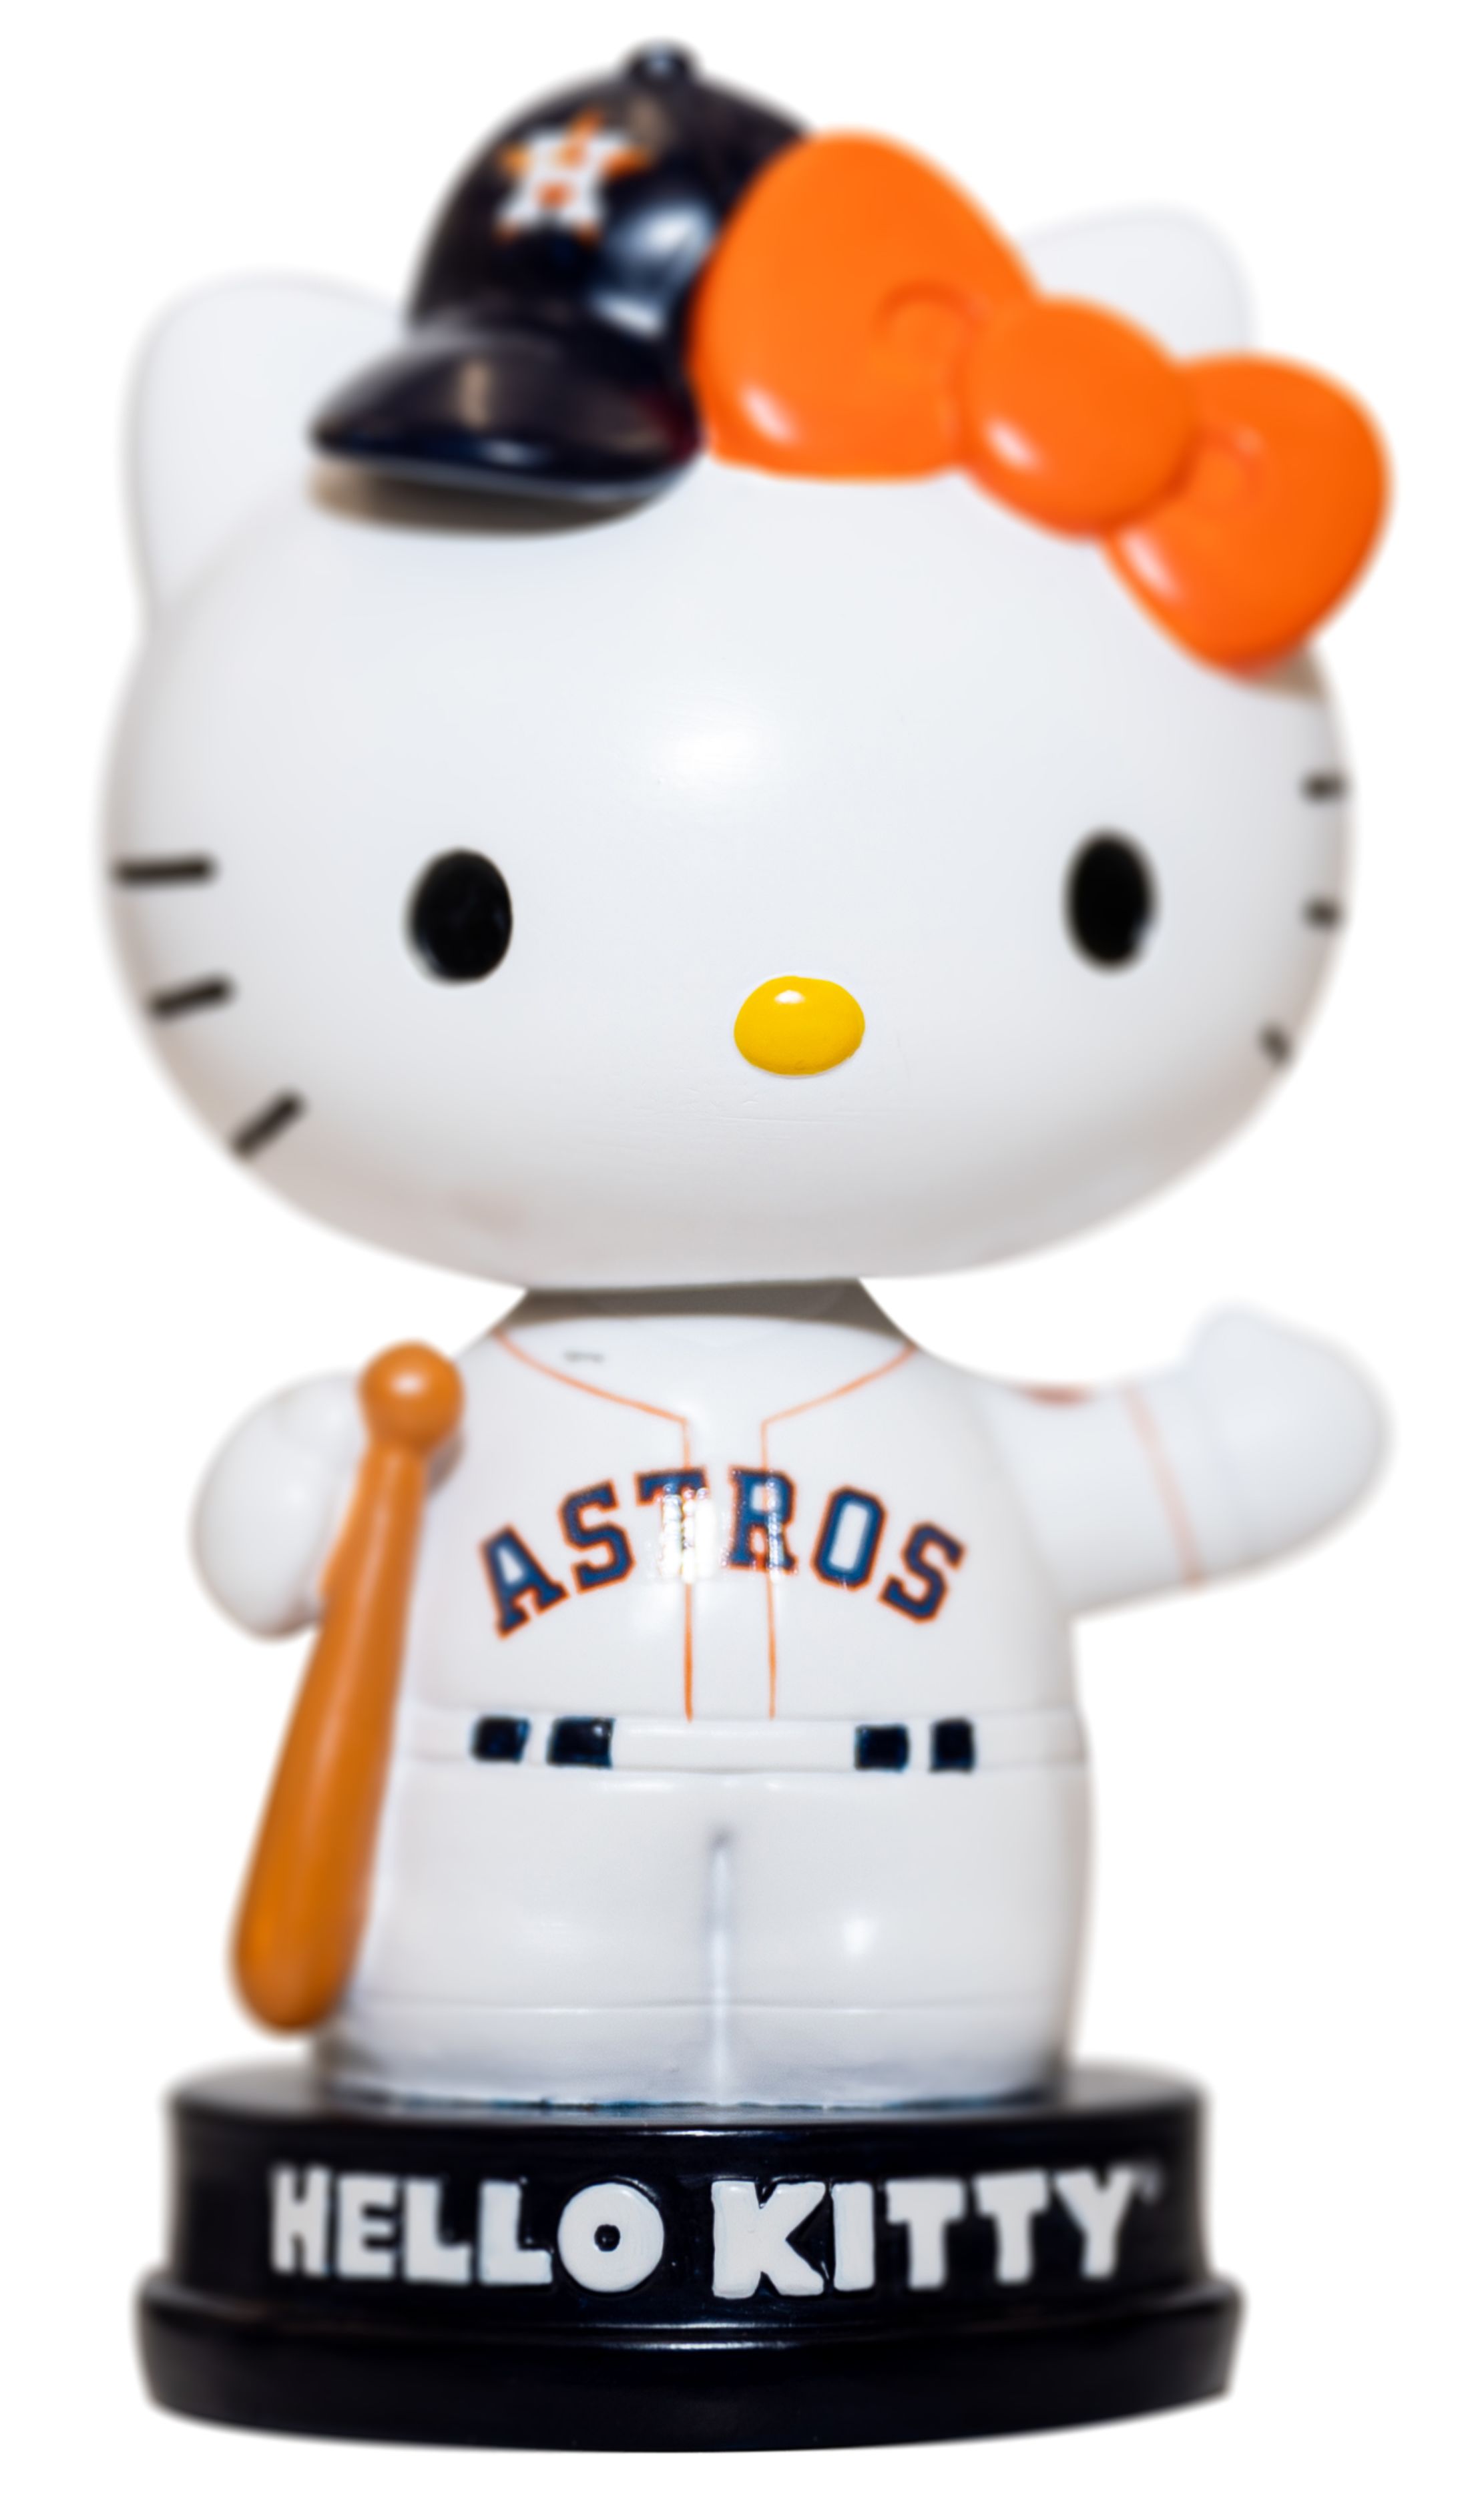 Astros Hello Kitty Night Houston Astros